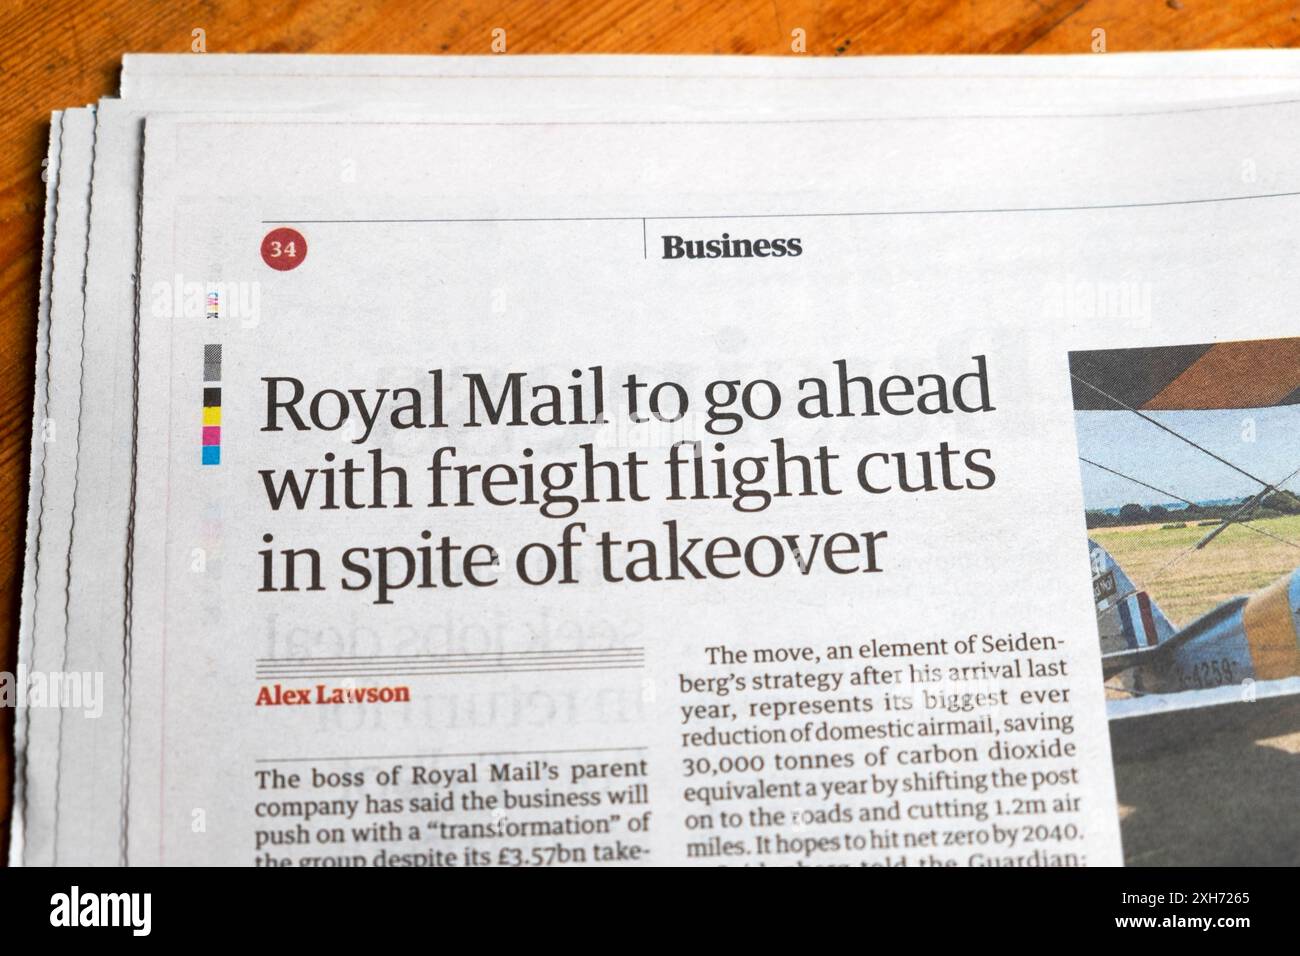 "Royal mail va poursuivre avec des réductions de vols de fret malgré la prise de contrôle" journal Guardian titre livraison services postaux article 8 juillet 2024 Royaume-Uni Banque D'Images